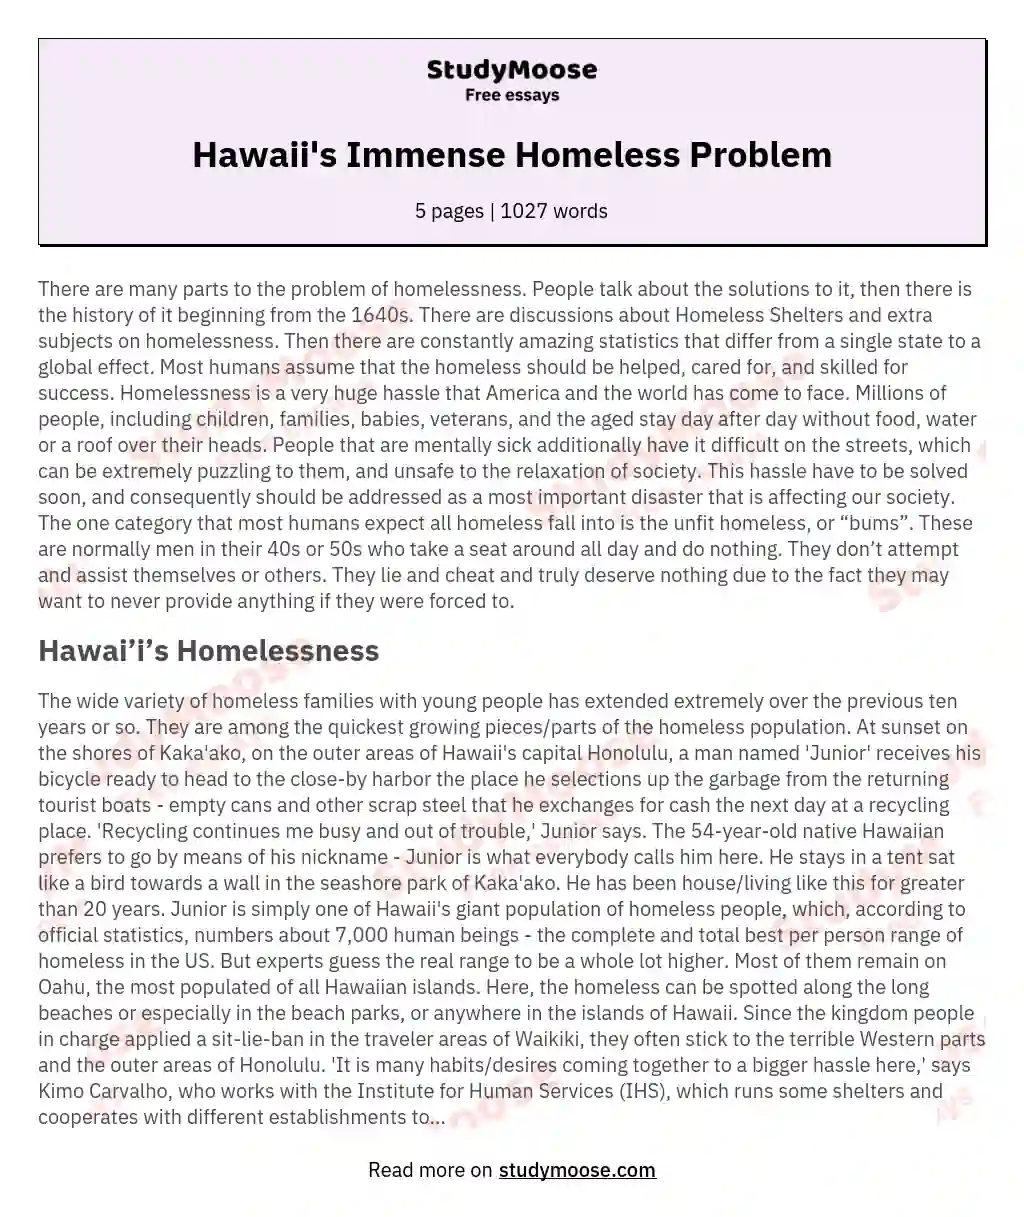 Hawaii's Immense Homeless Problem